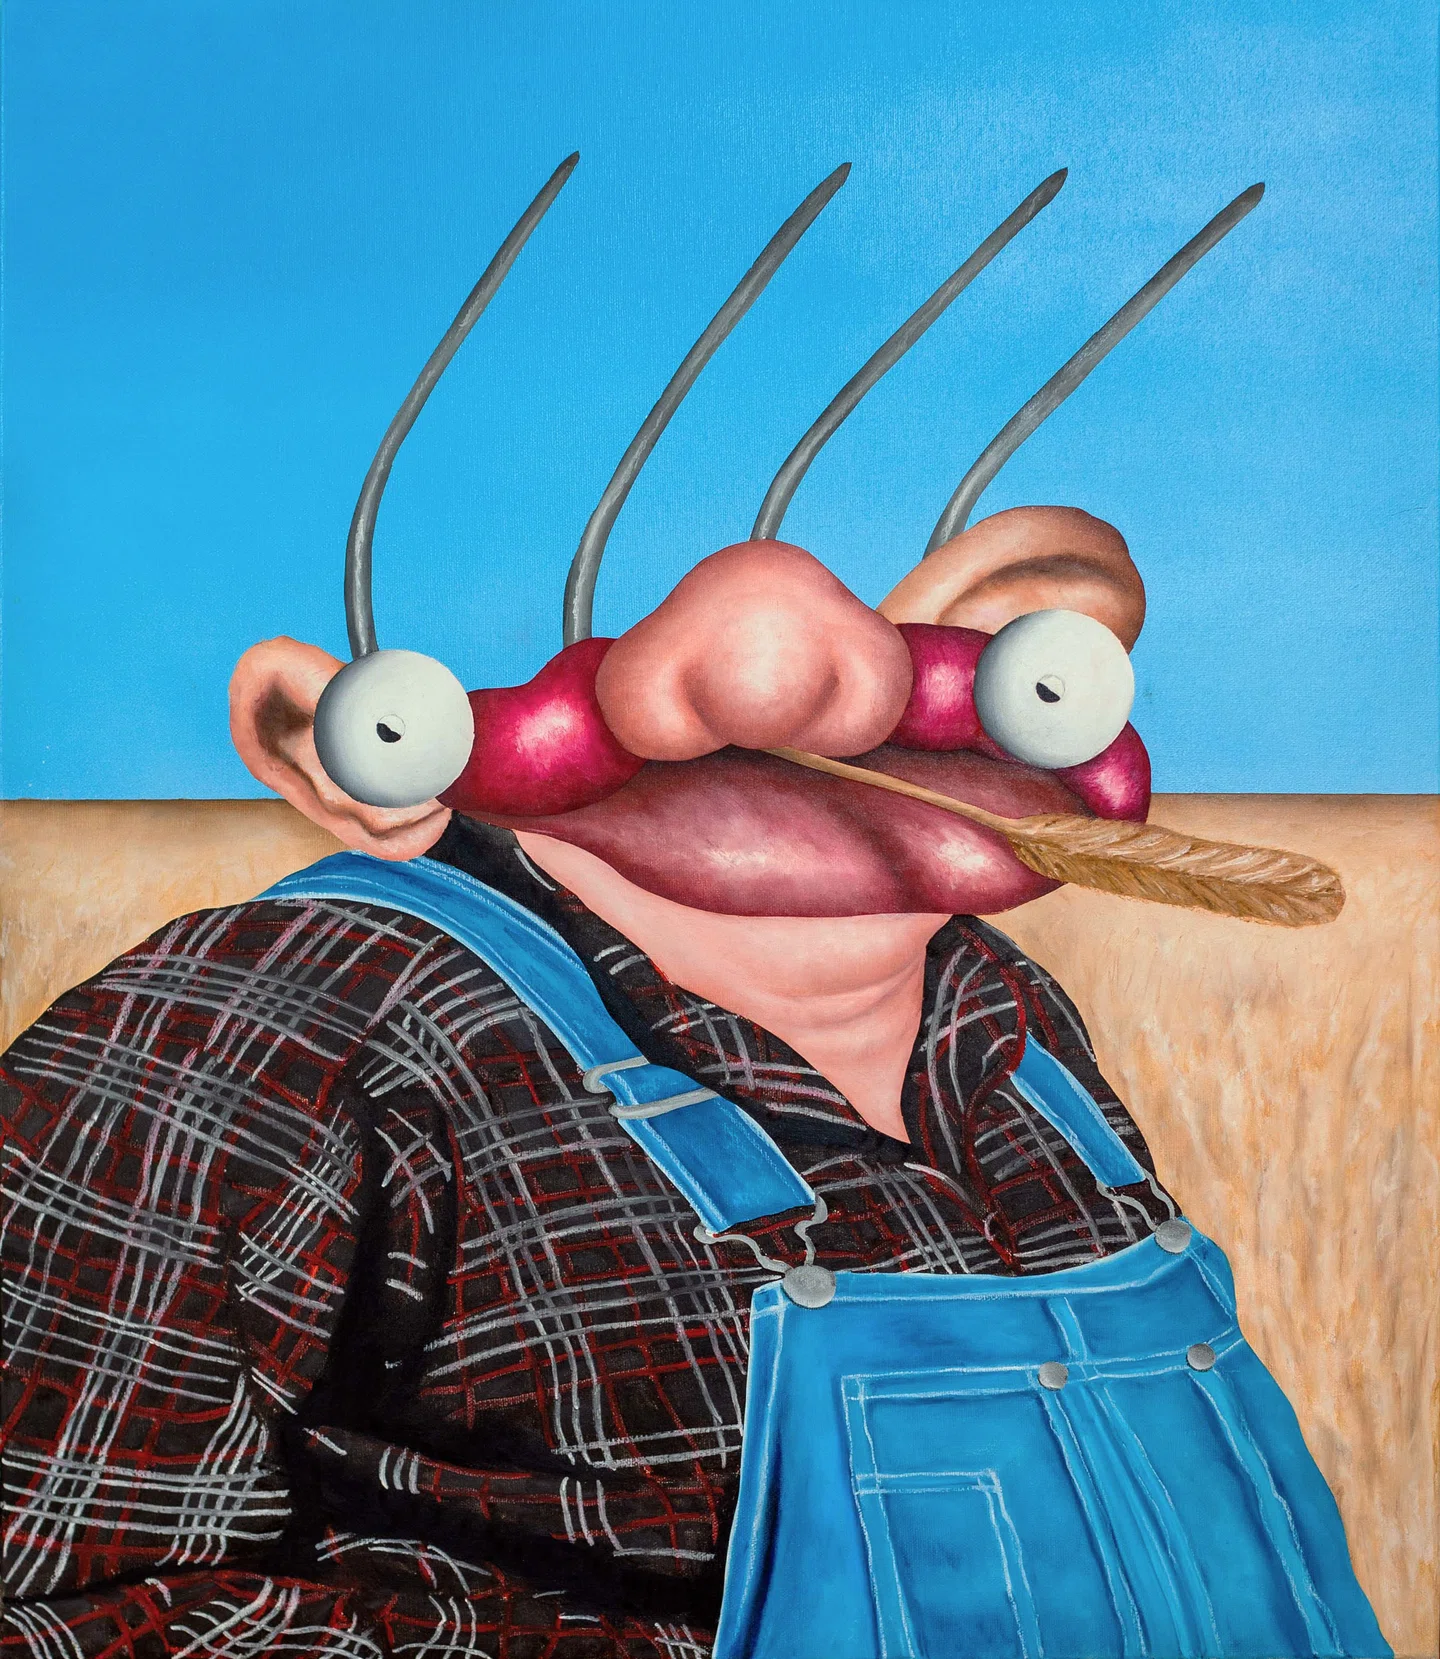 Pintando personagens como você nunca viu antes, as obras de arte de Zac Yeates são hilariamente estranhas